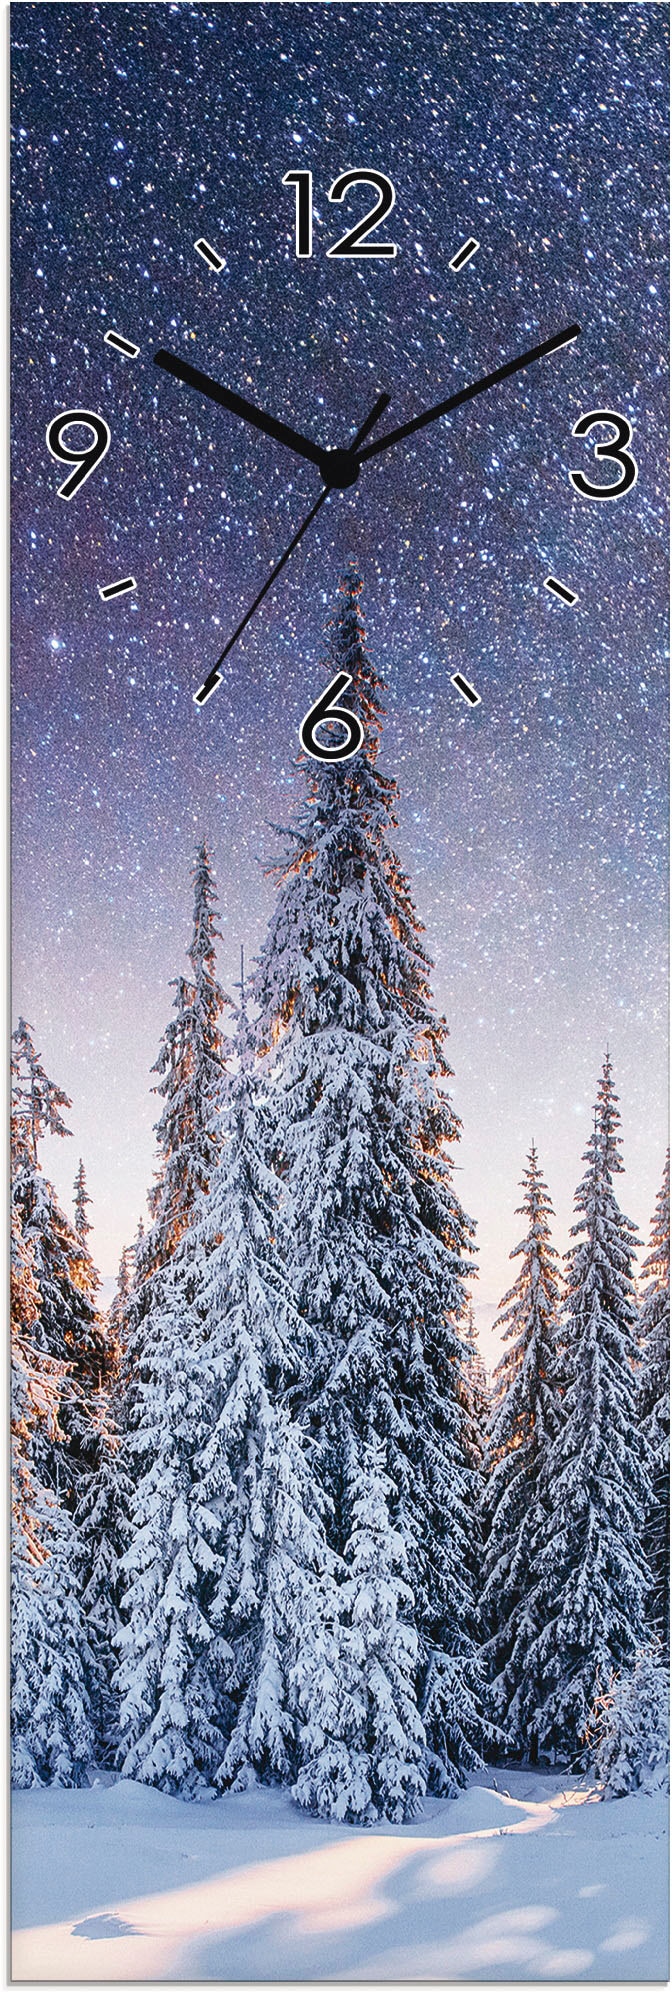 Artland Wanduhr »Glasuhr Tannenwald im Schnee«, wahlweise mit Quarz- oder Funkuhrwerk, lautlos ohne Tickgeräusche